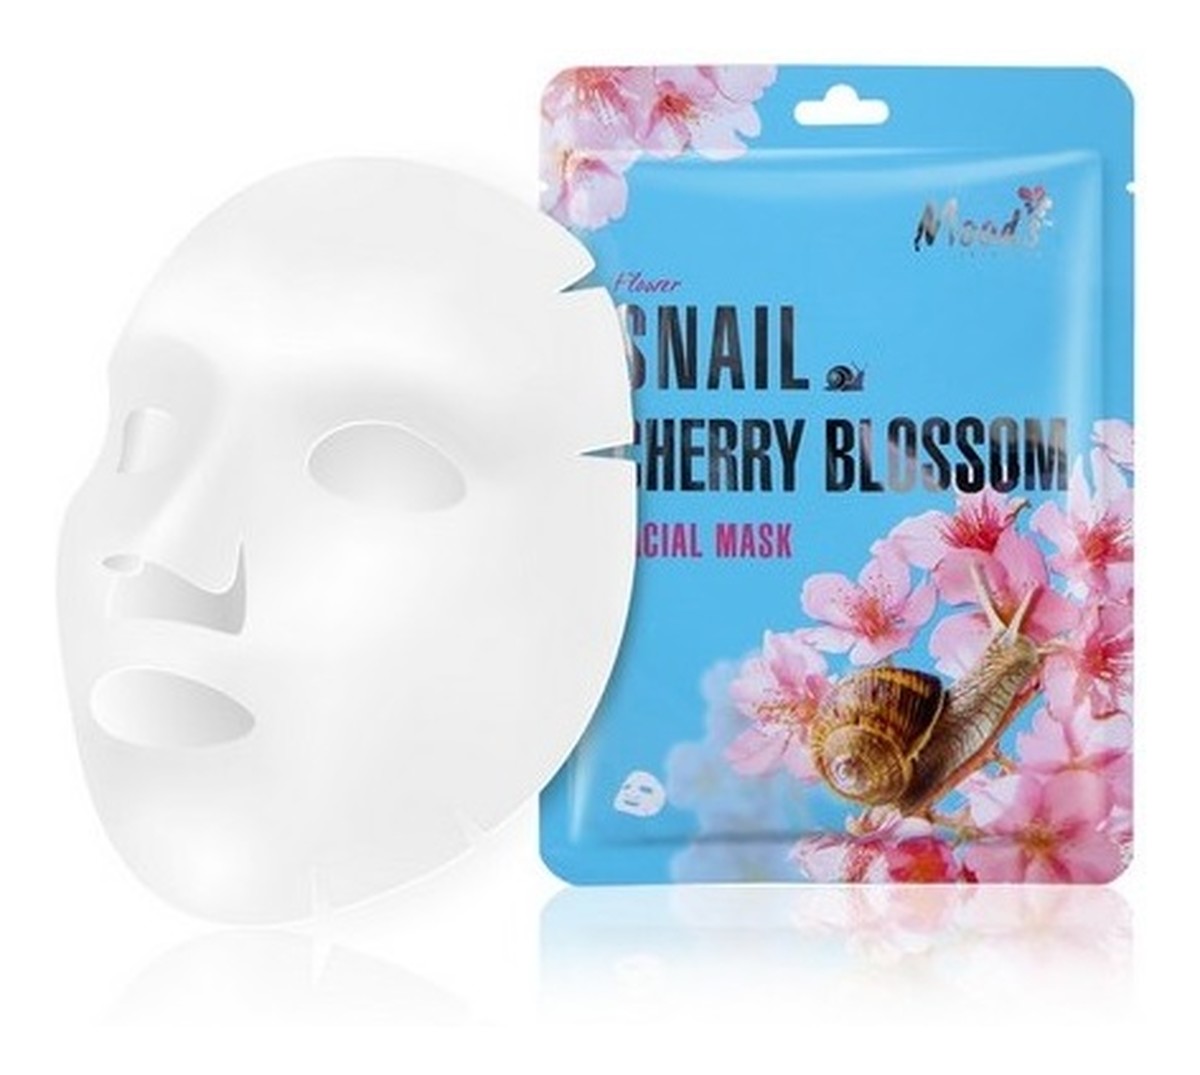 Snail Cherry Blossom Facial Mask maska w płachcie ze śluzem ślimaka i ekstraktem z kwiatów